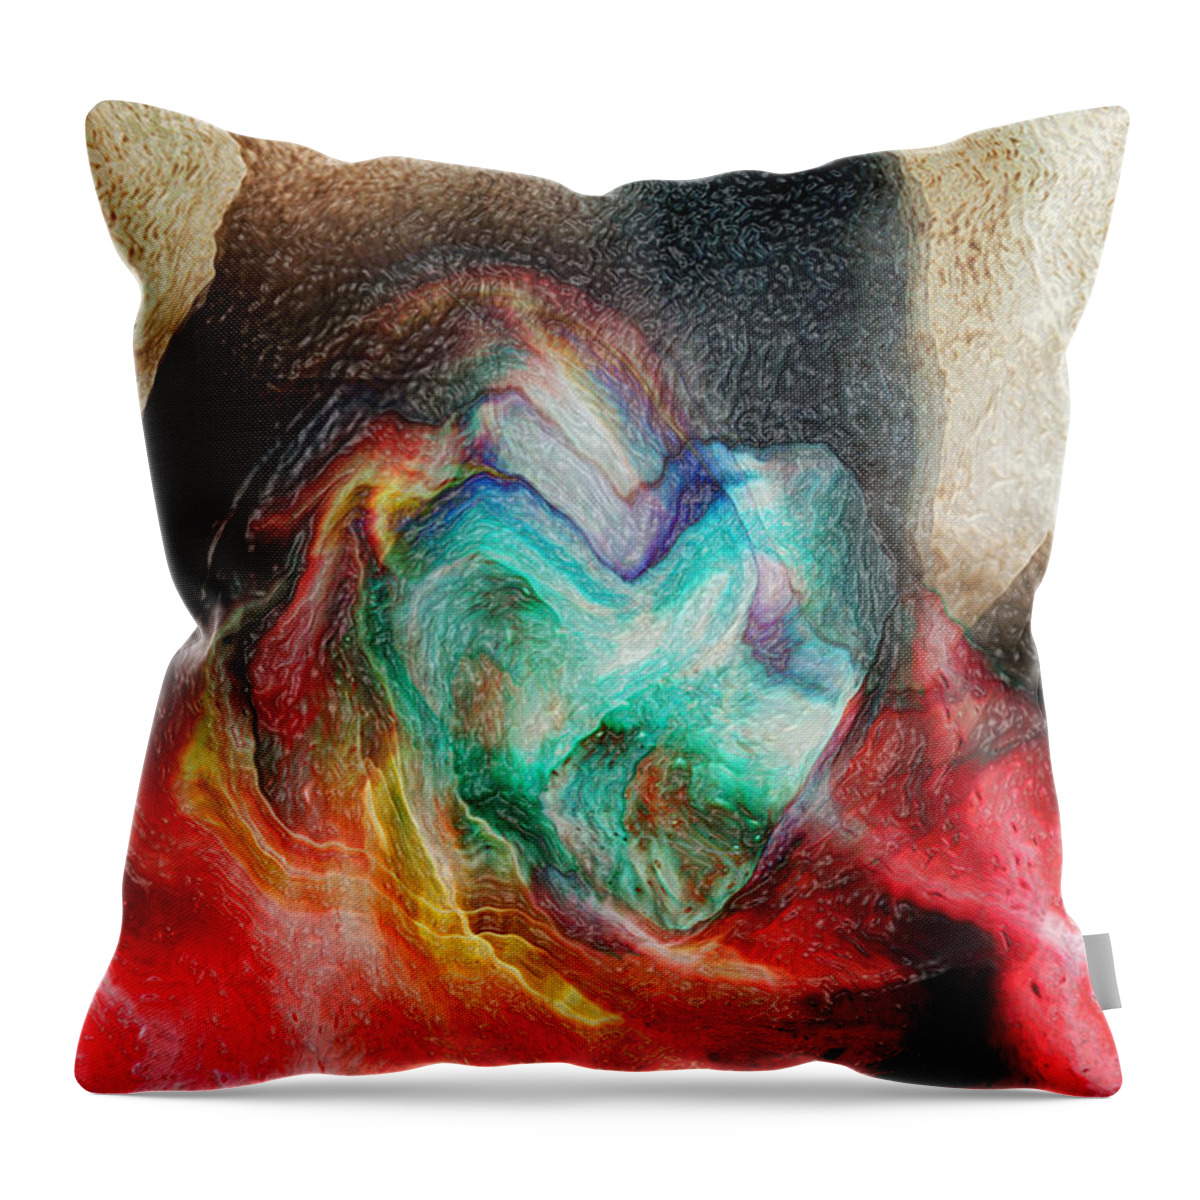 Heart Deep Throw Pillow featuring the digital art Heart Deep by Linda Sannuti